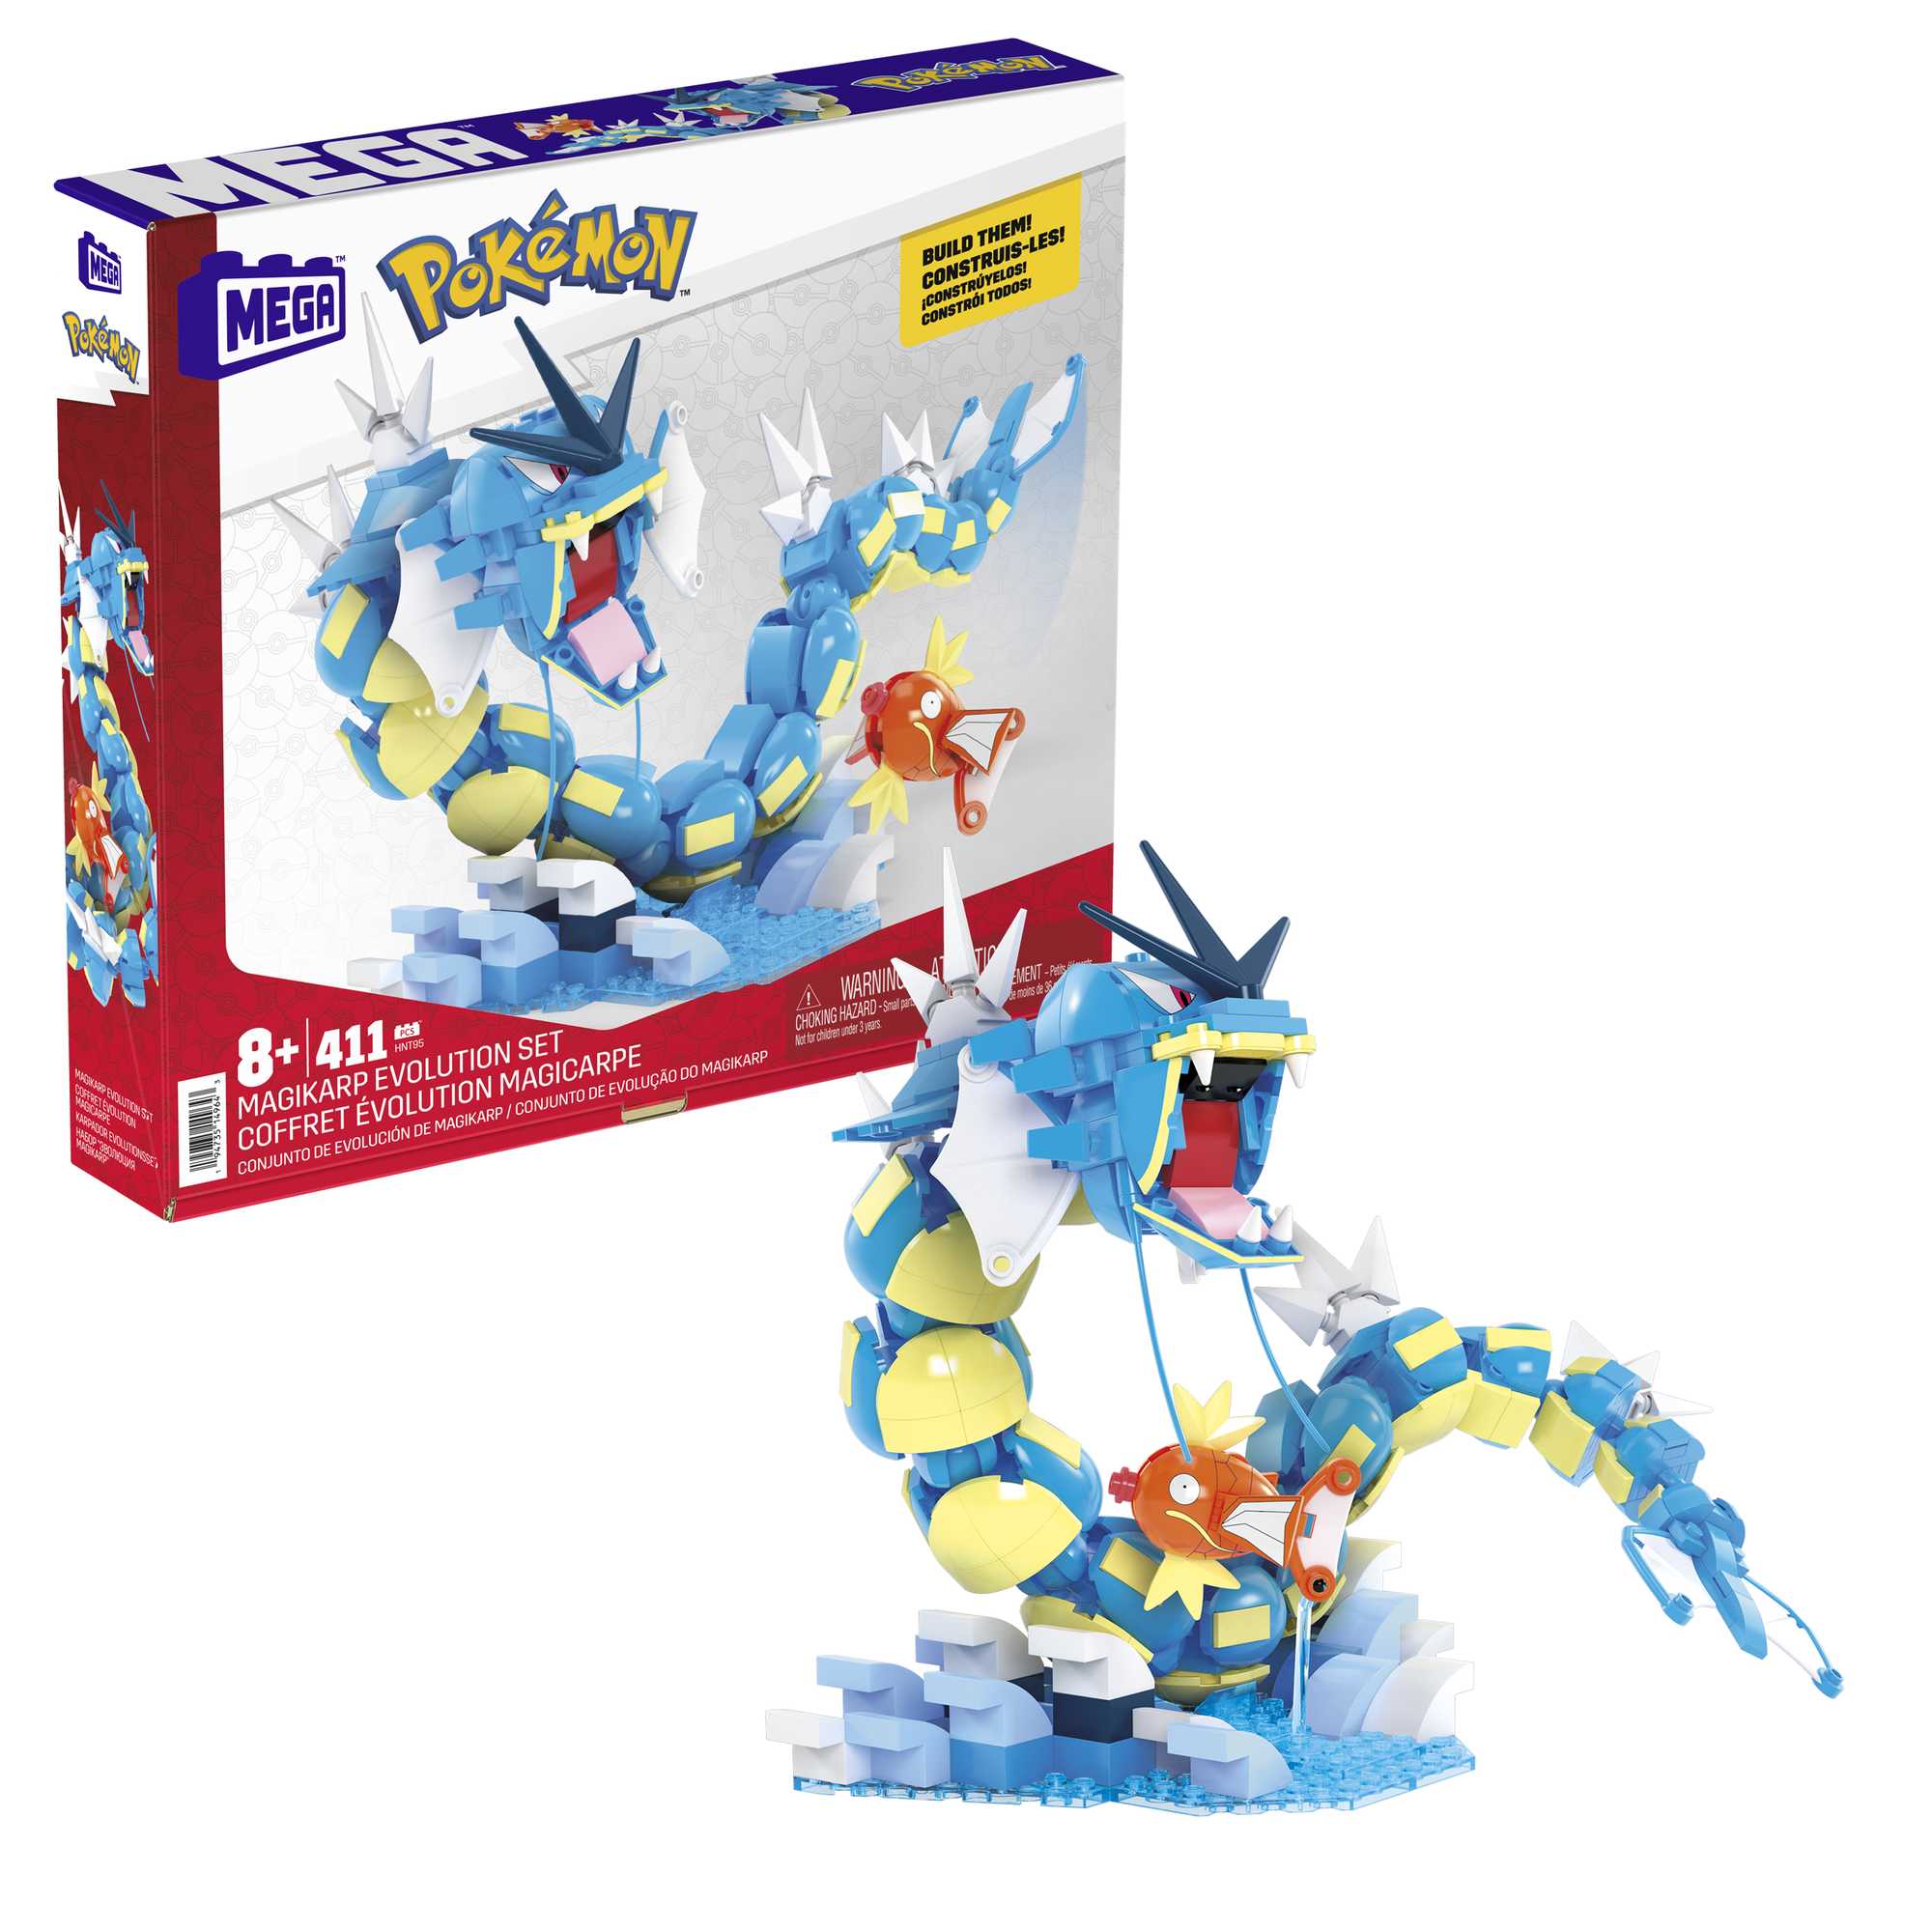  MEGA Pokémon Action Figure Building Toys for Kids